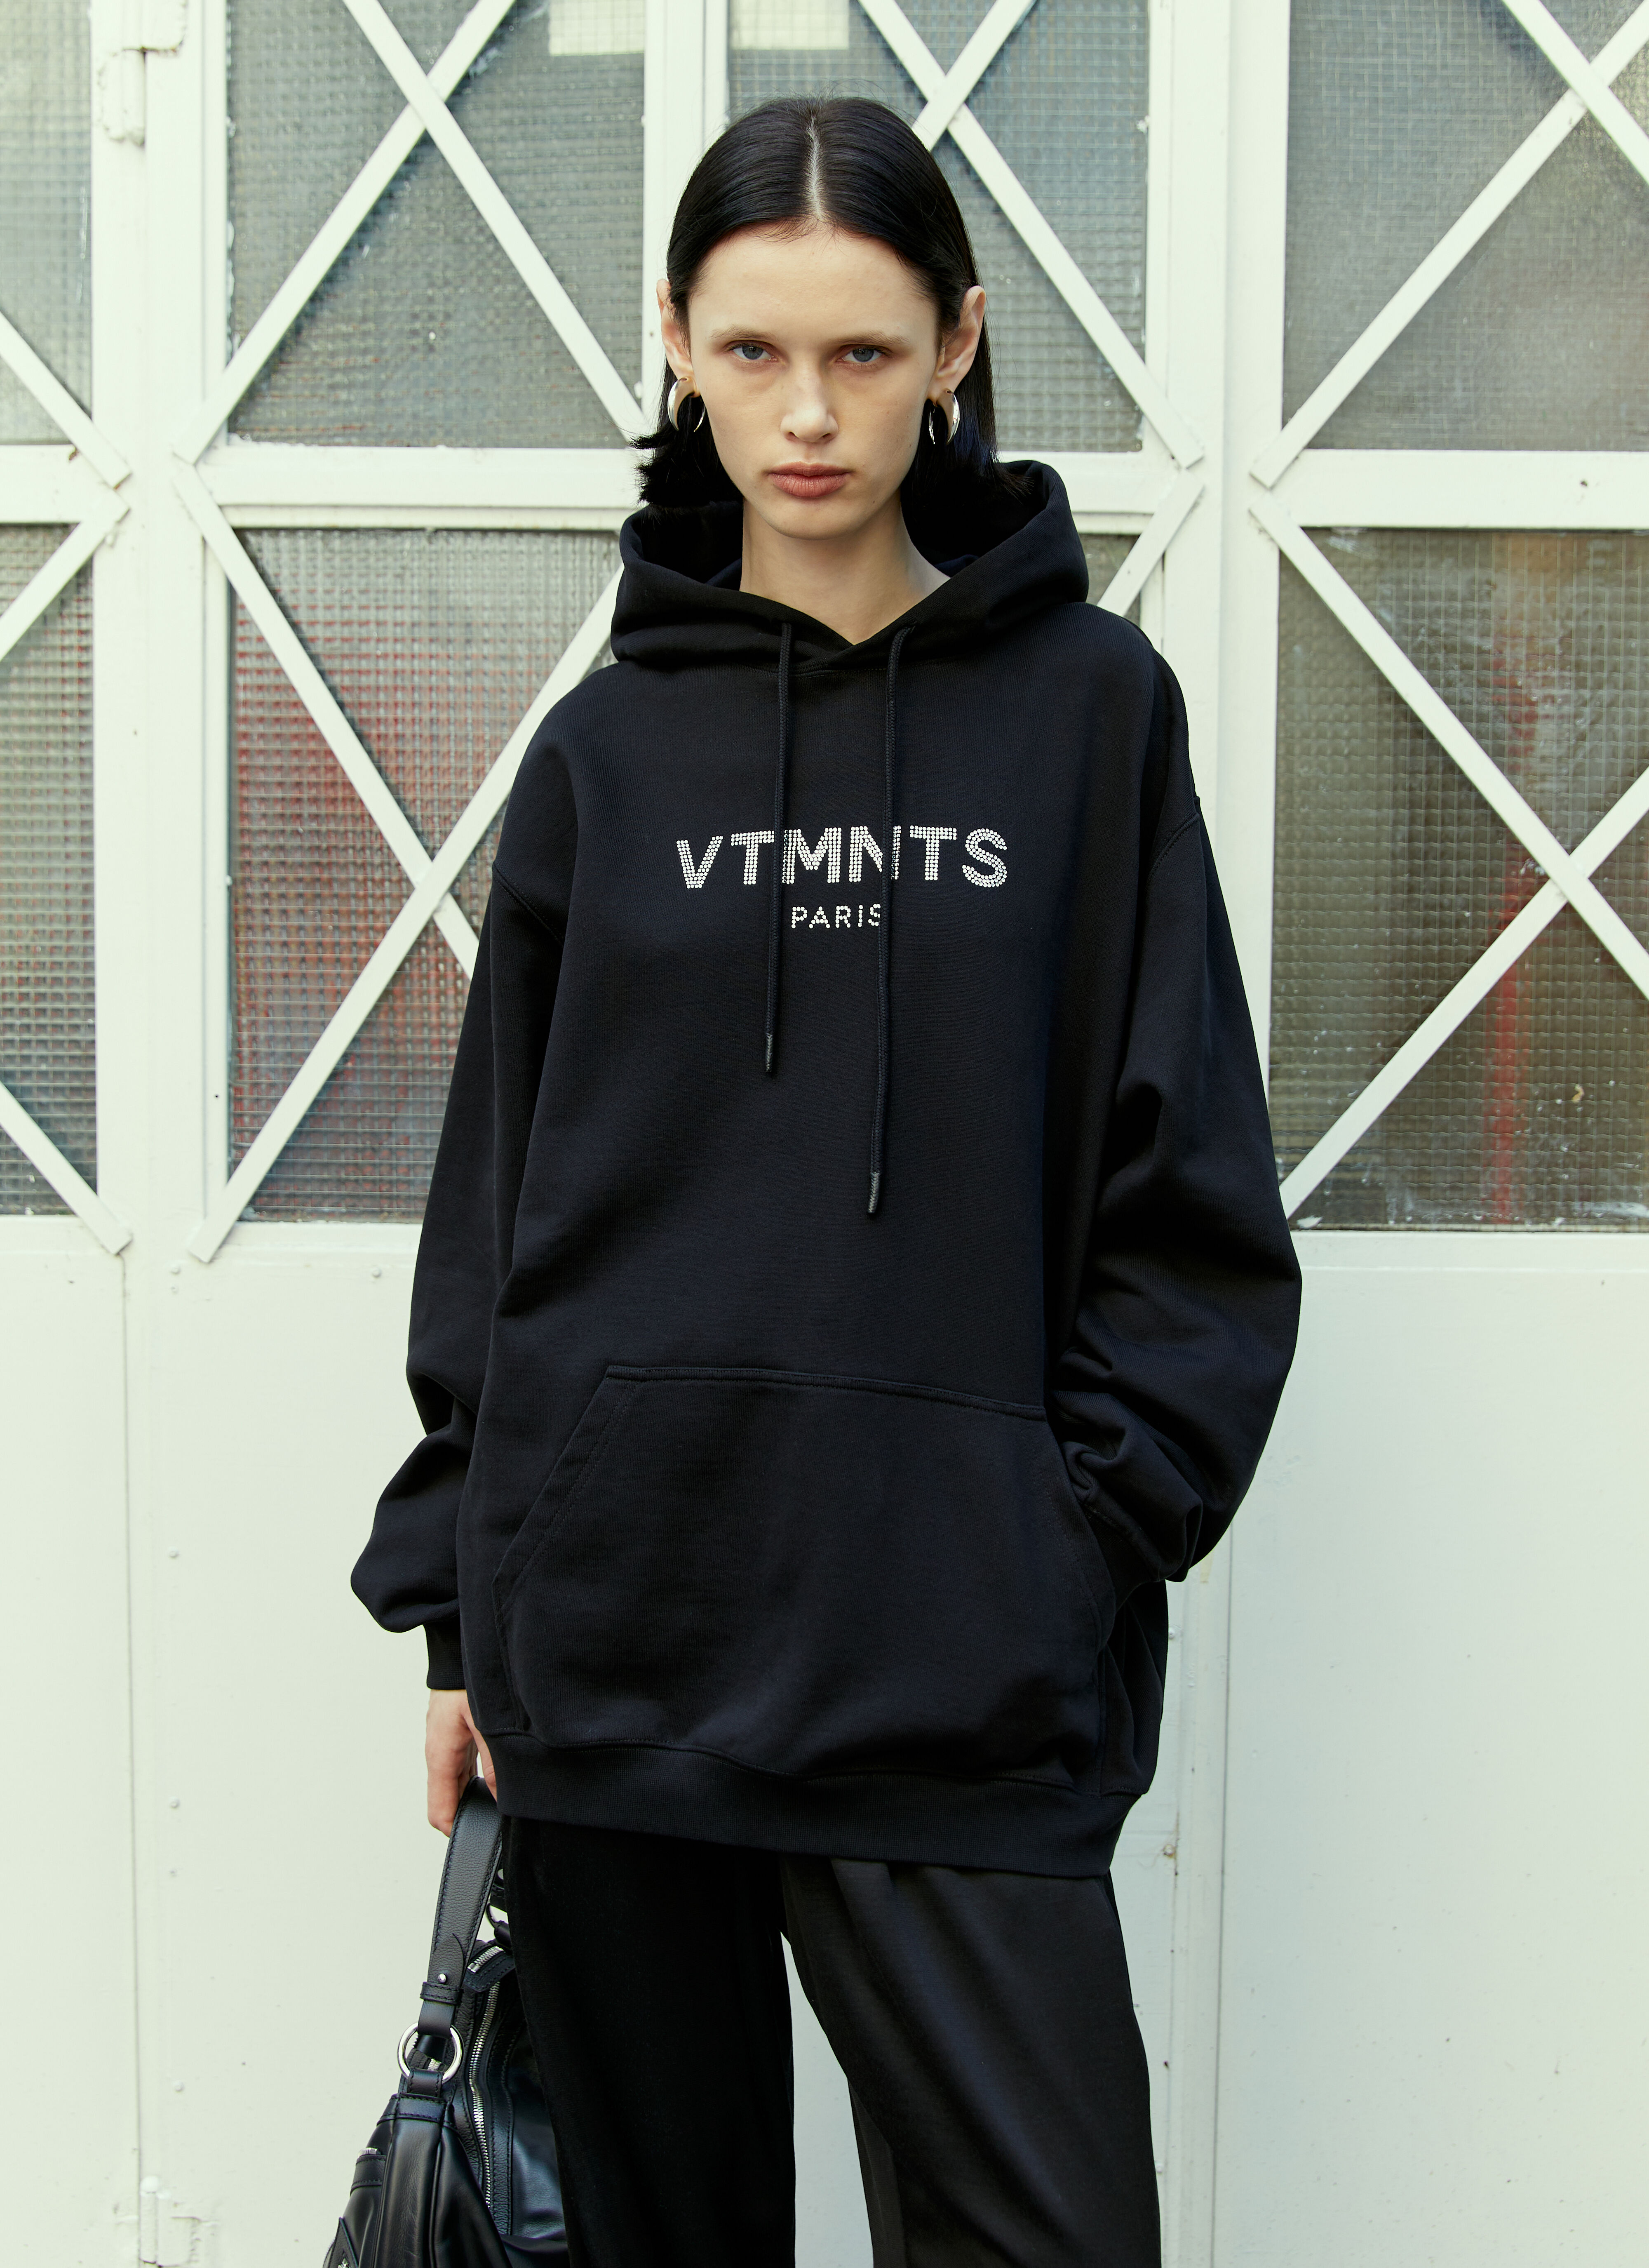 VTMNTS Paris 水晶徽标连帽运动衫 黑色 vtm0354008